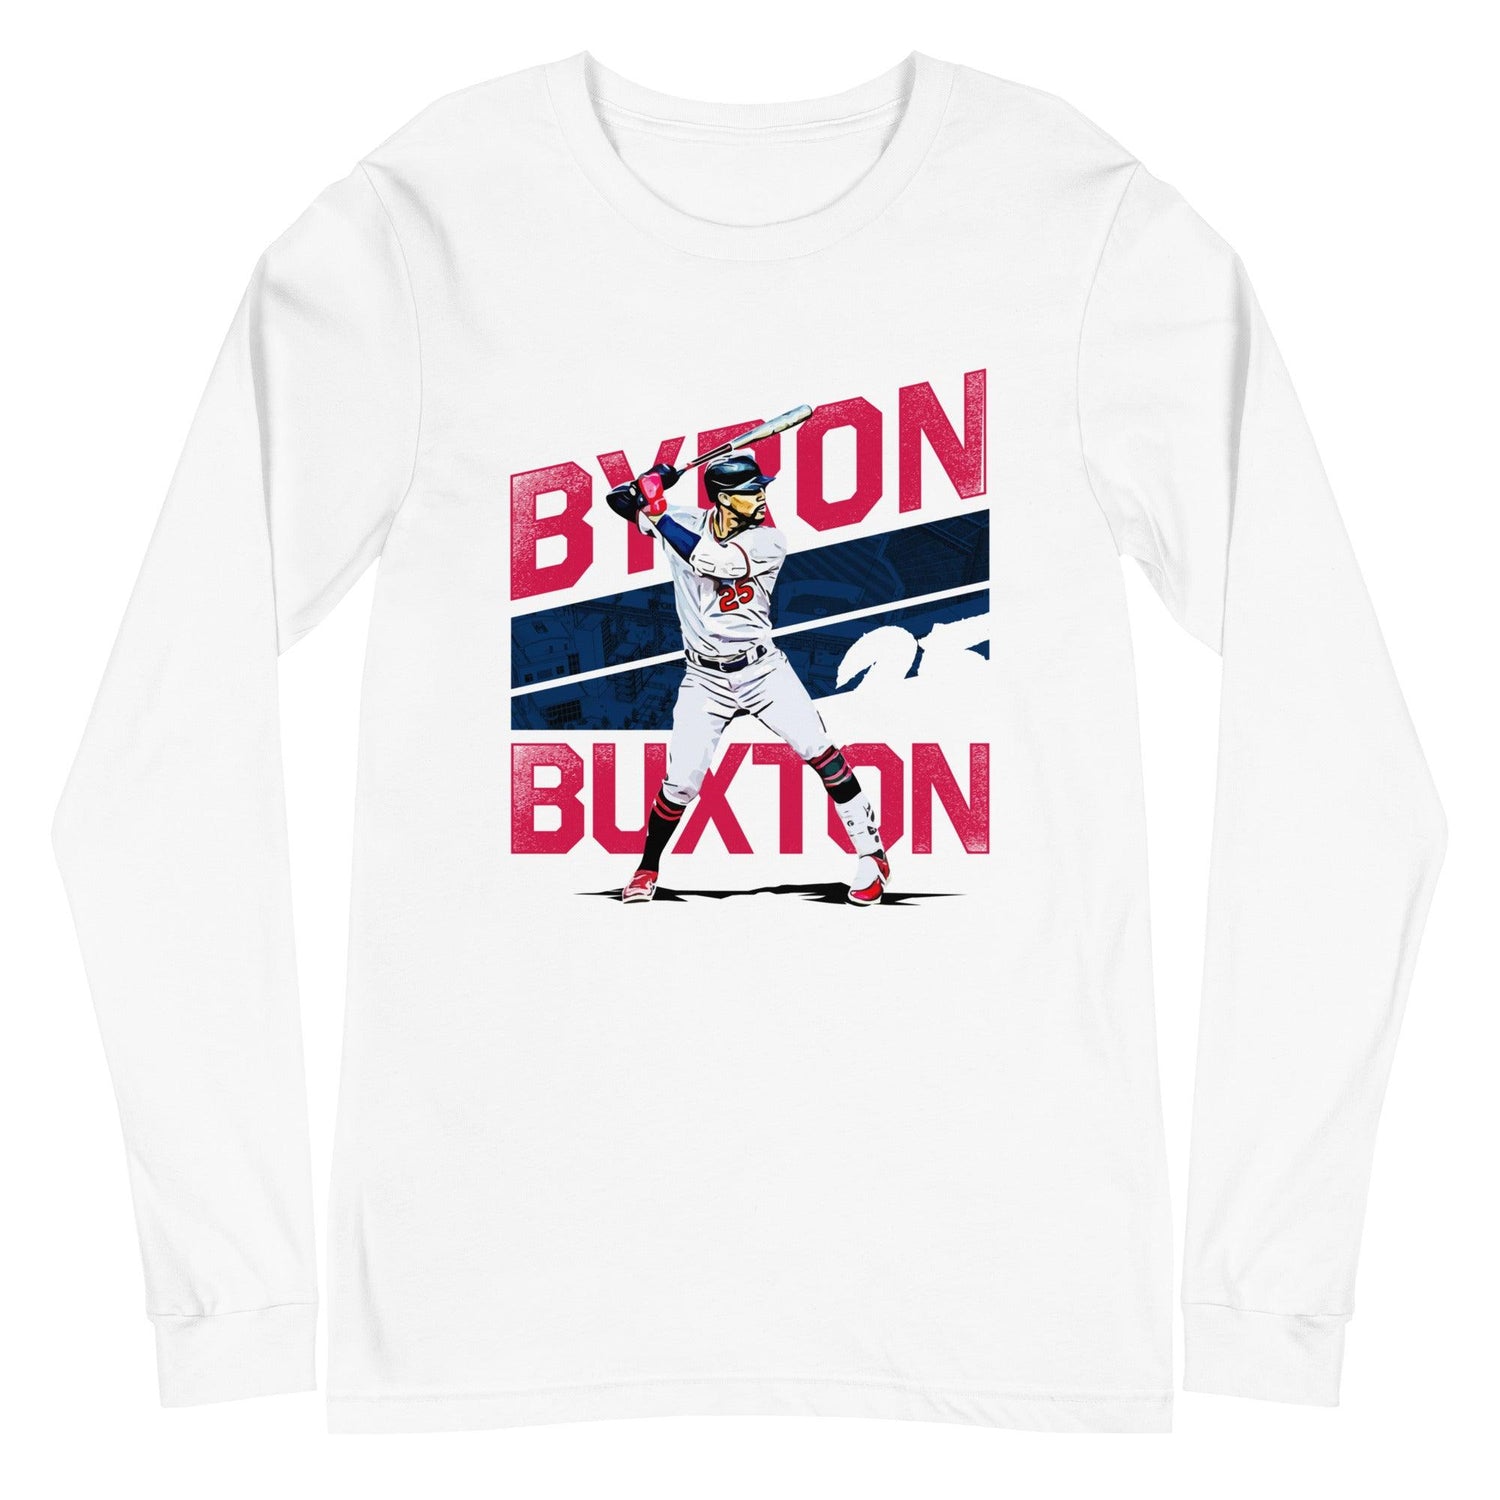 Byron Buxton "25" Long Sleeve Tee - Fan Arch